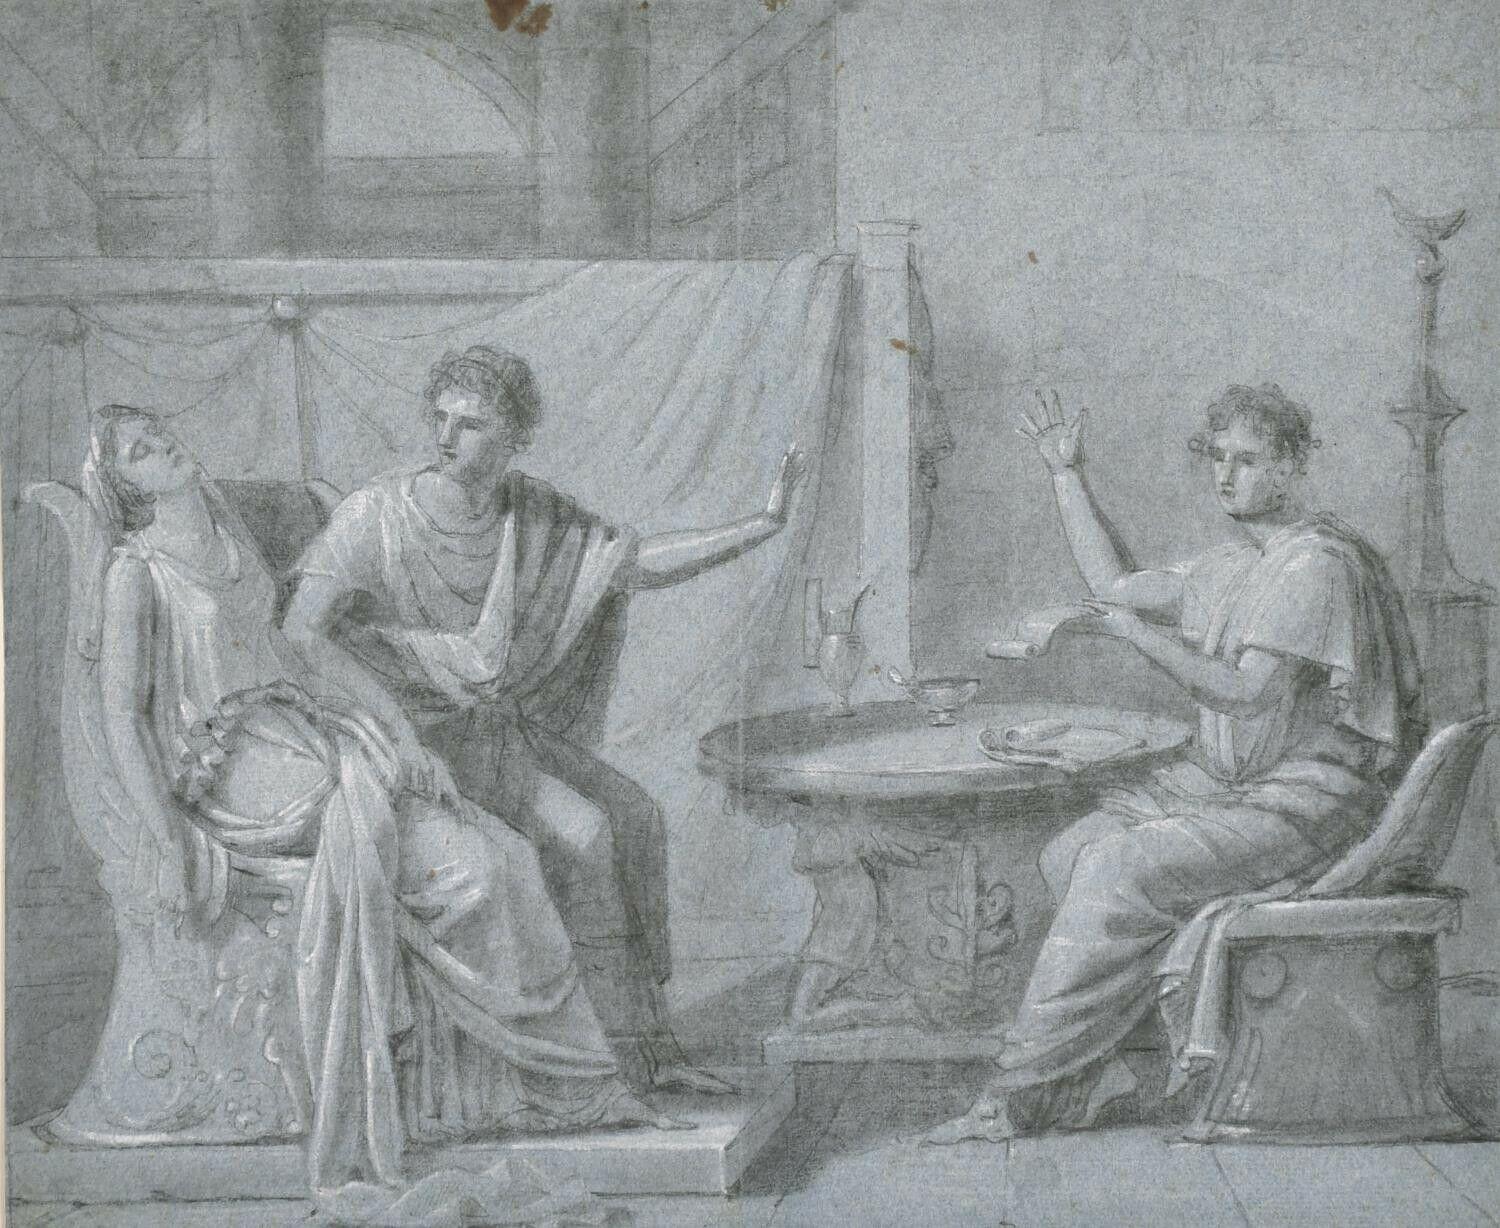 DRAWING EN CHAISE DE Maître OLD DU XVIIIe Siècle - SCENE INTÉRIEURE DE FIGURES romaines